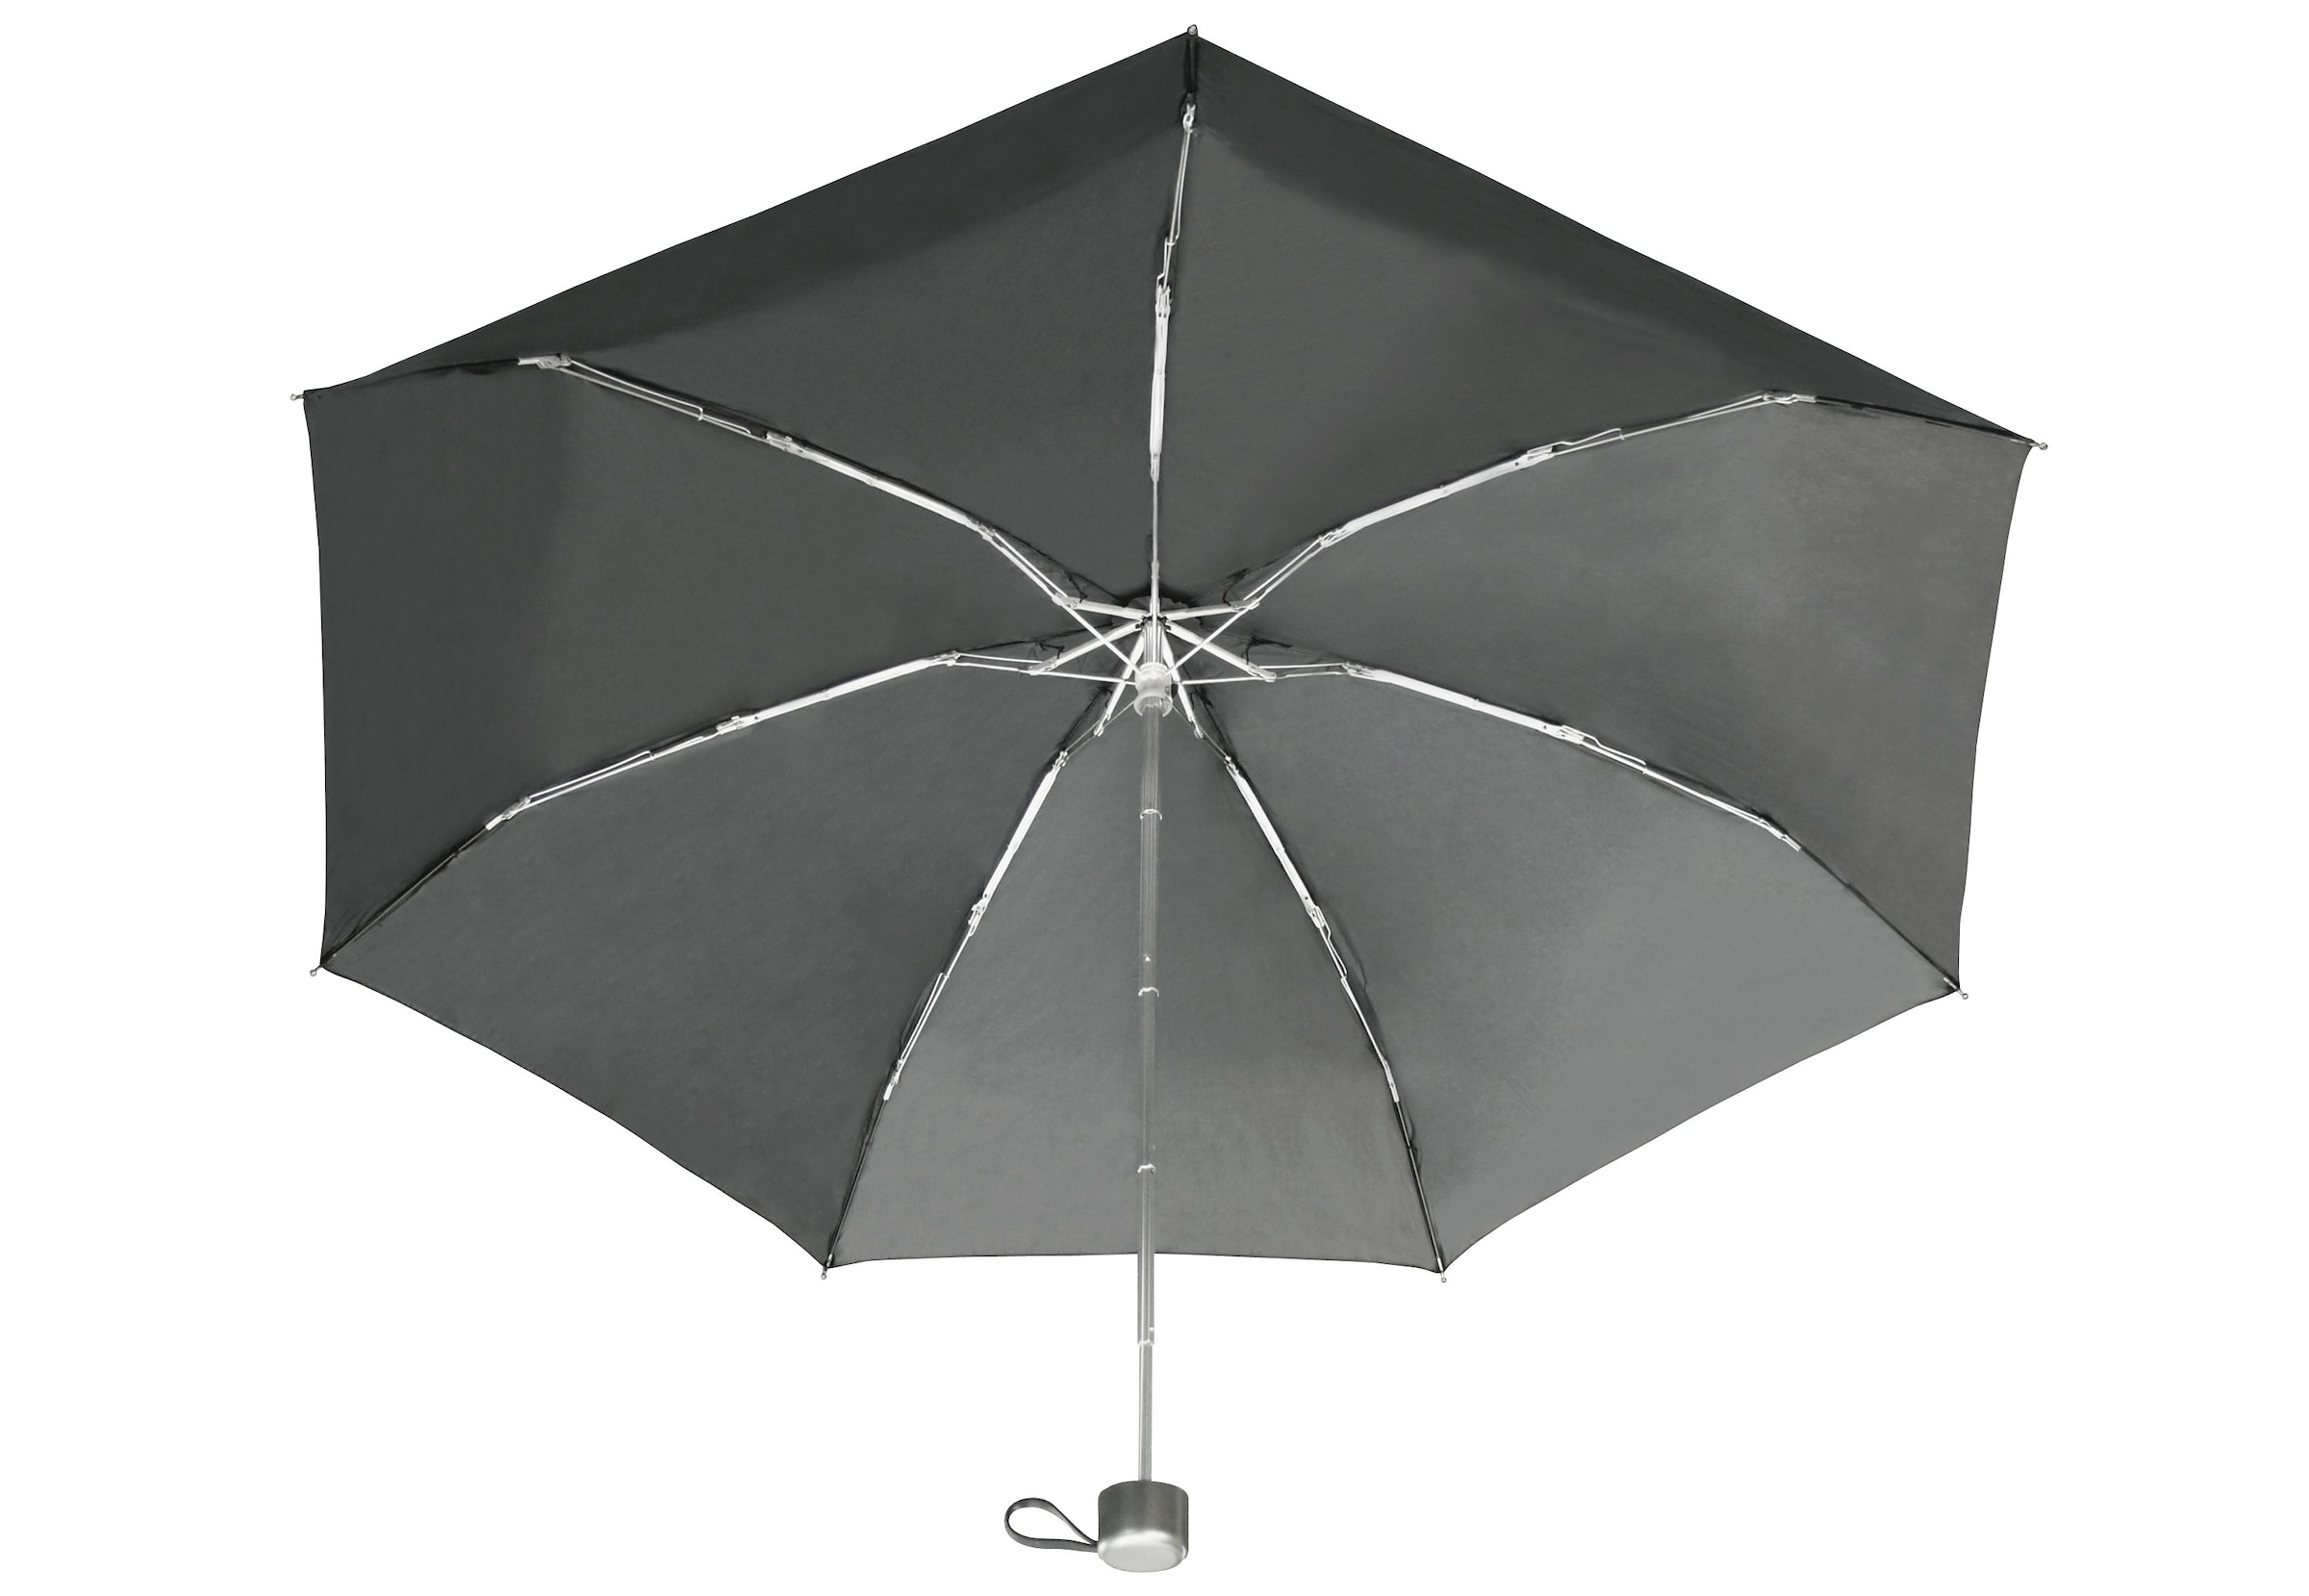 Taschenregenschirm bestellen »Der schwarz« Riese, jetzt kleine EuroSCHIRM®